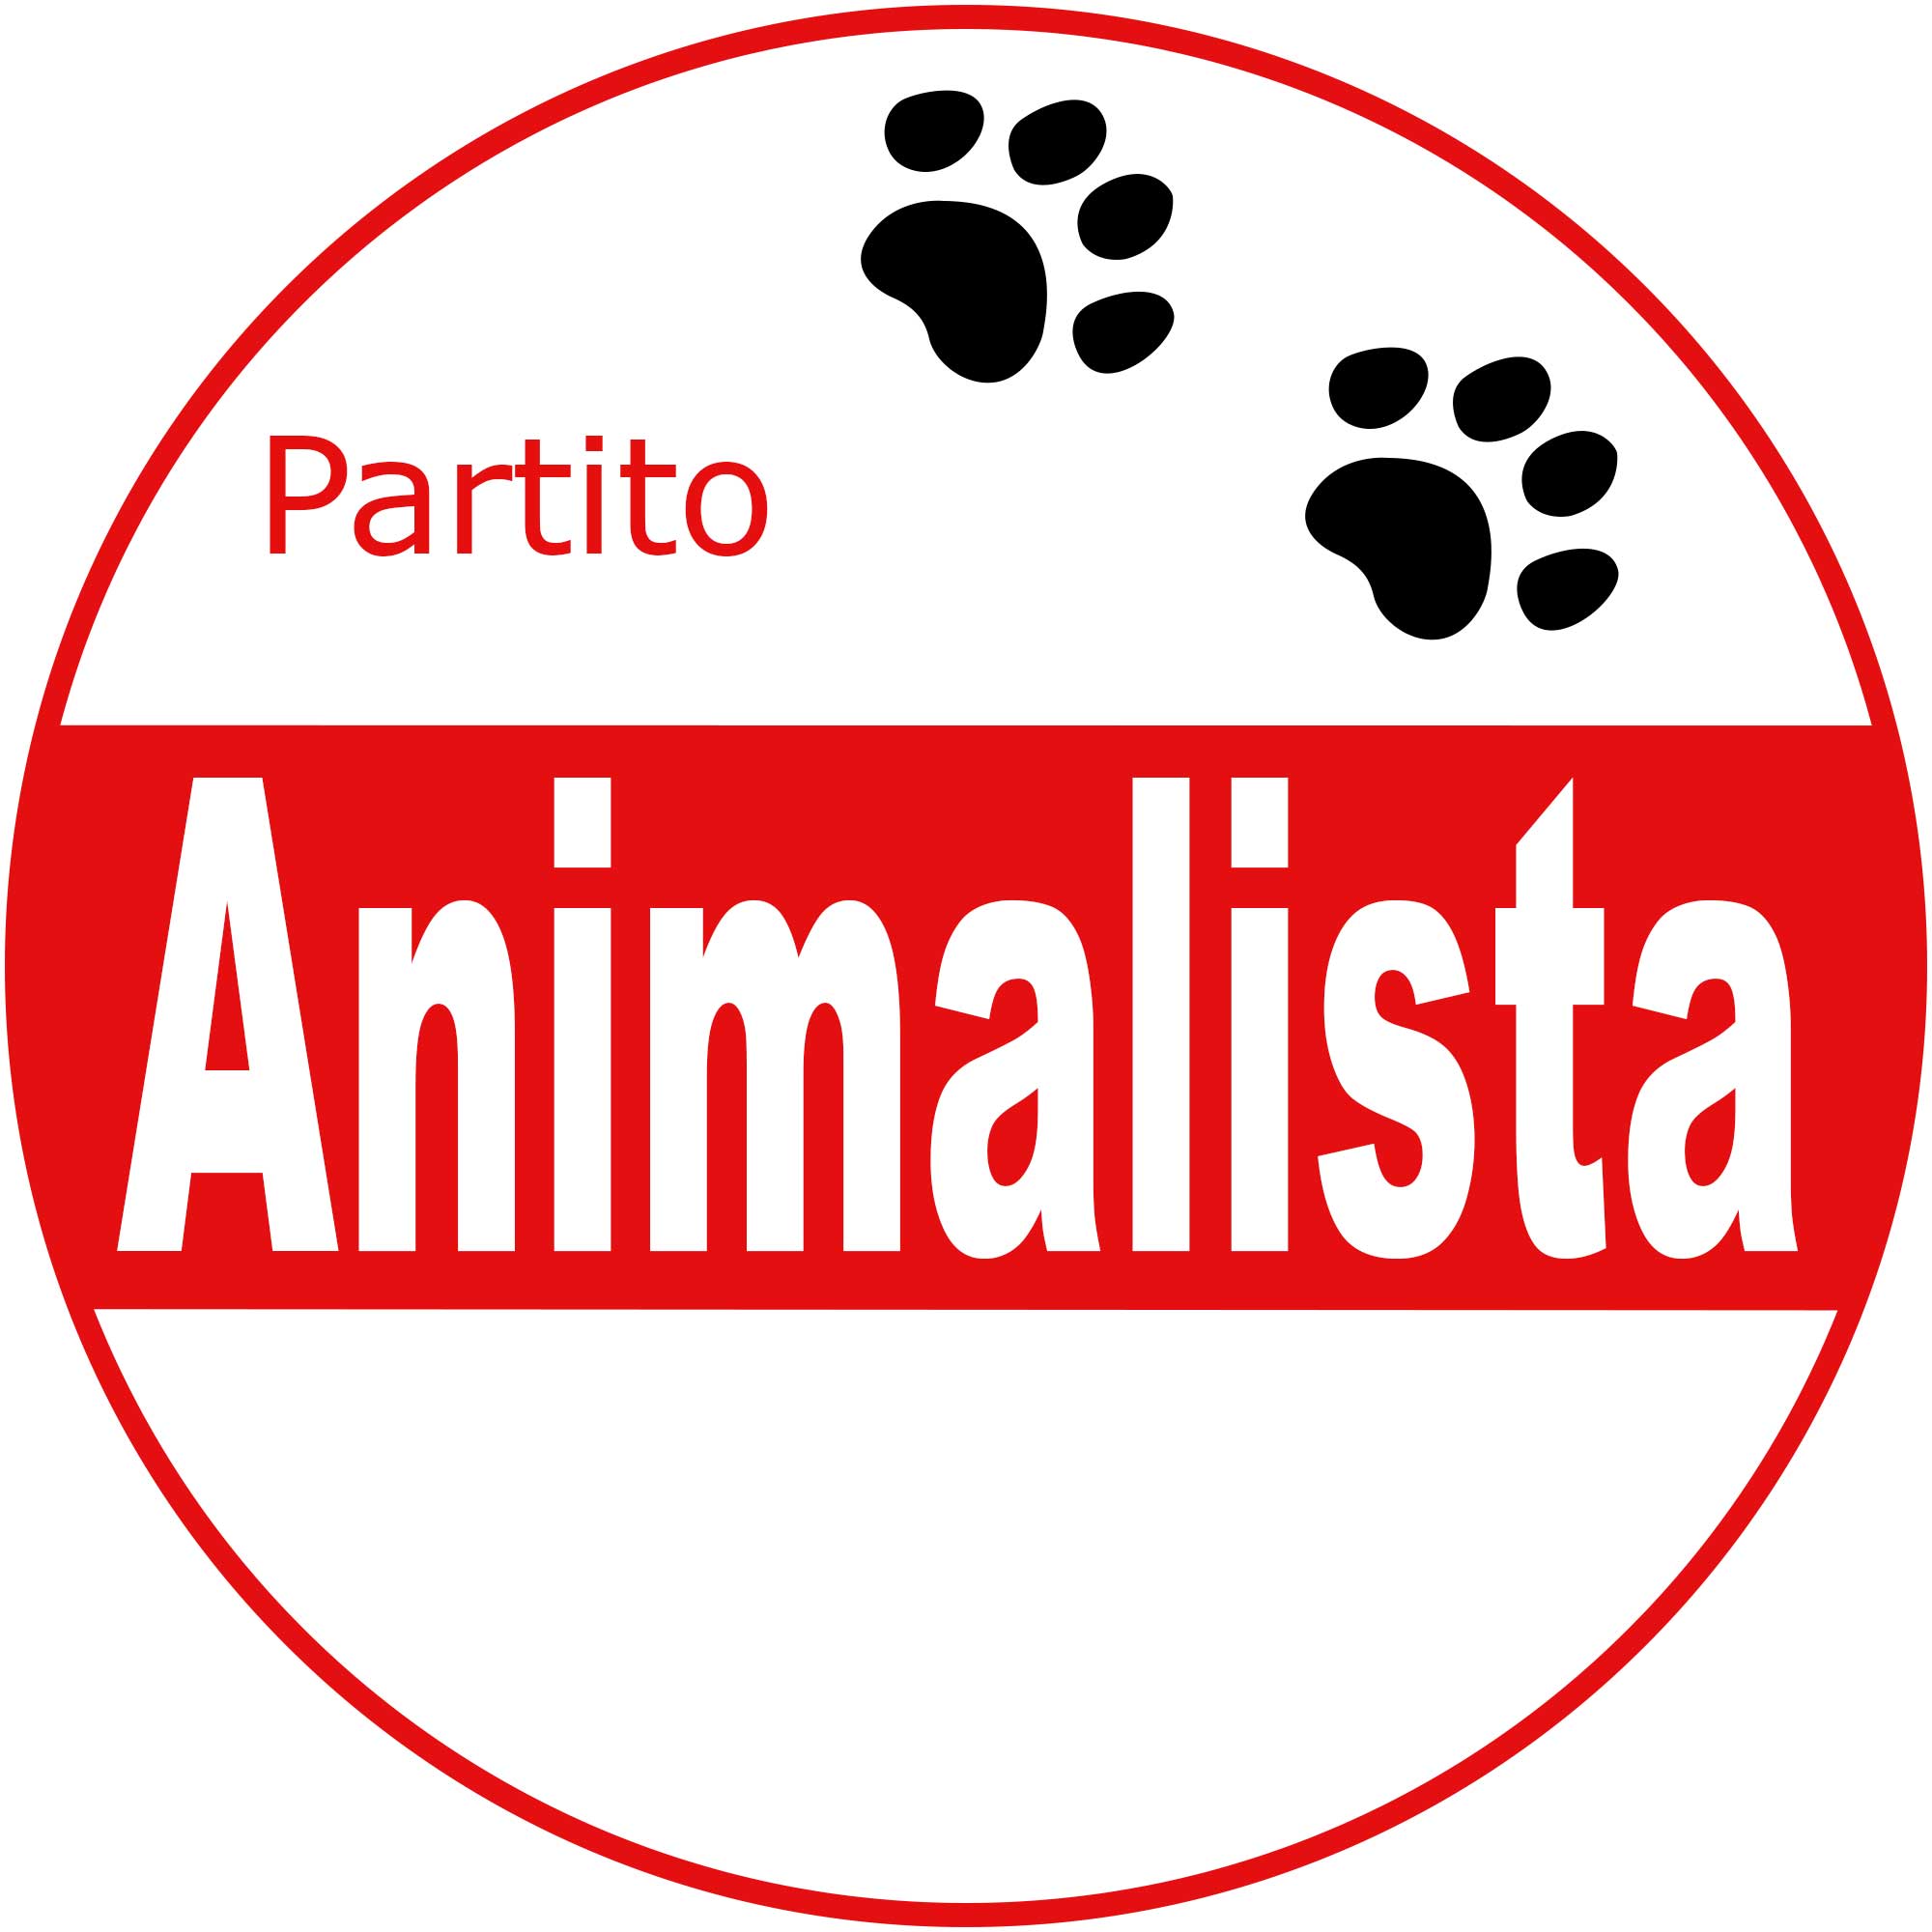 Partito Animalista